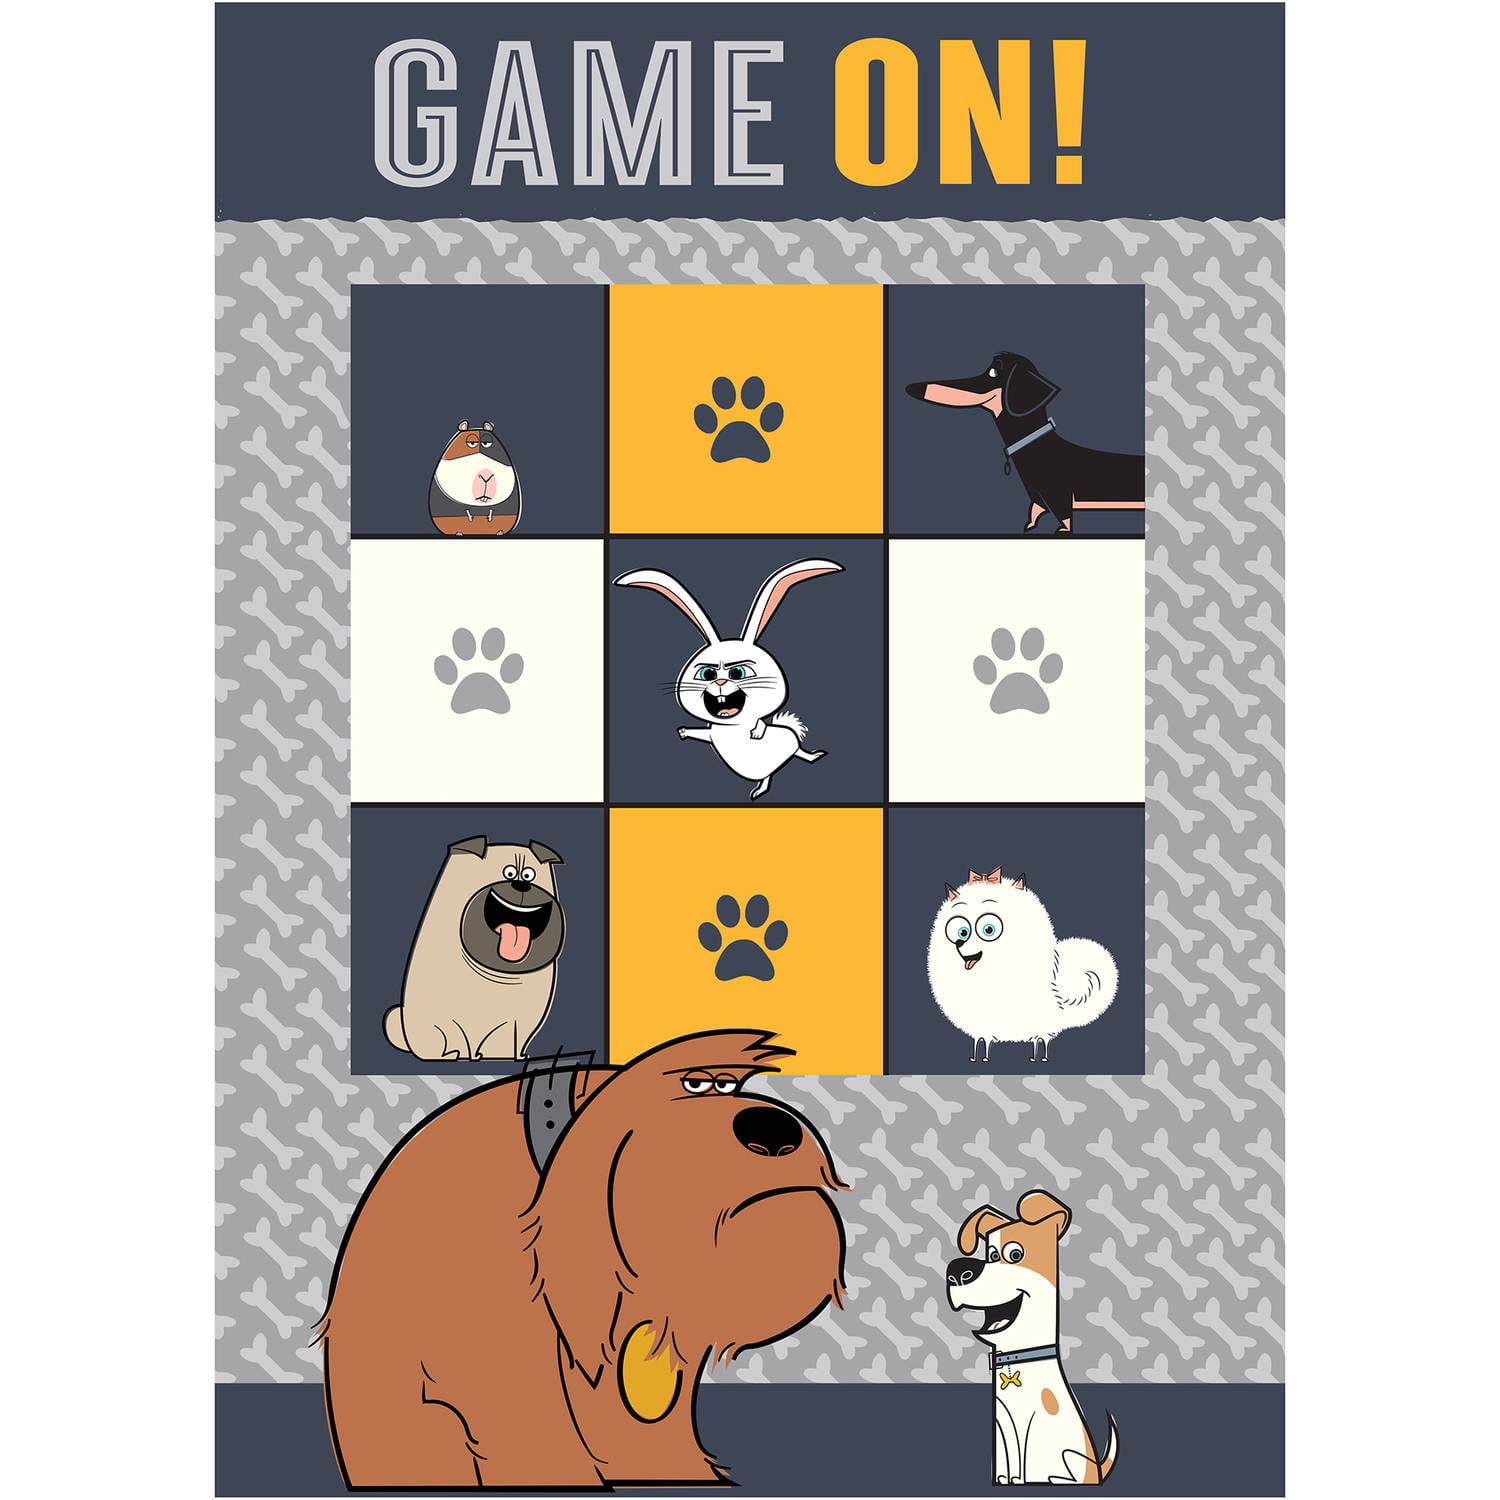 Pet Games - Free online games at GamesGames.com